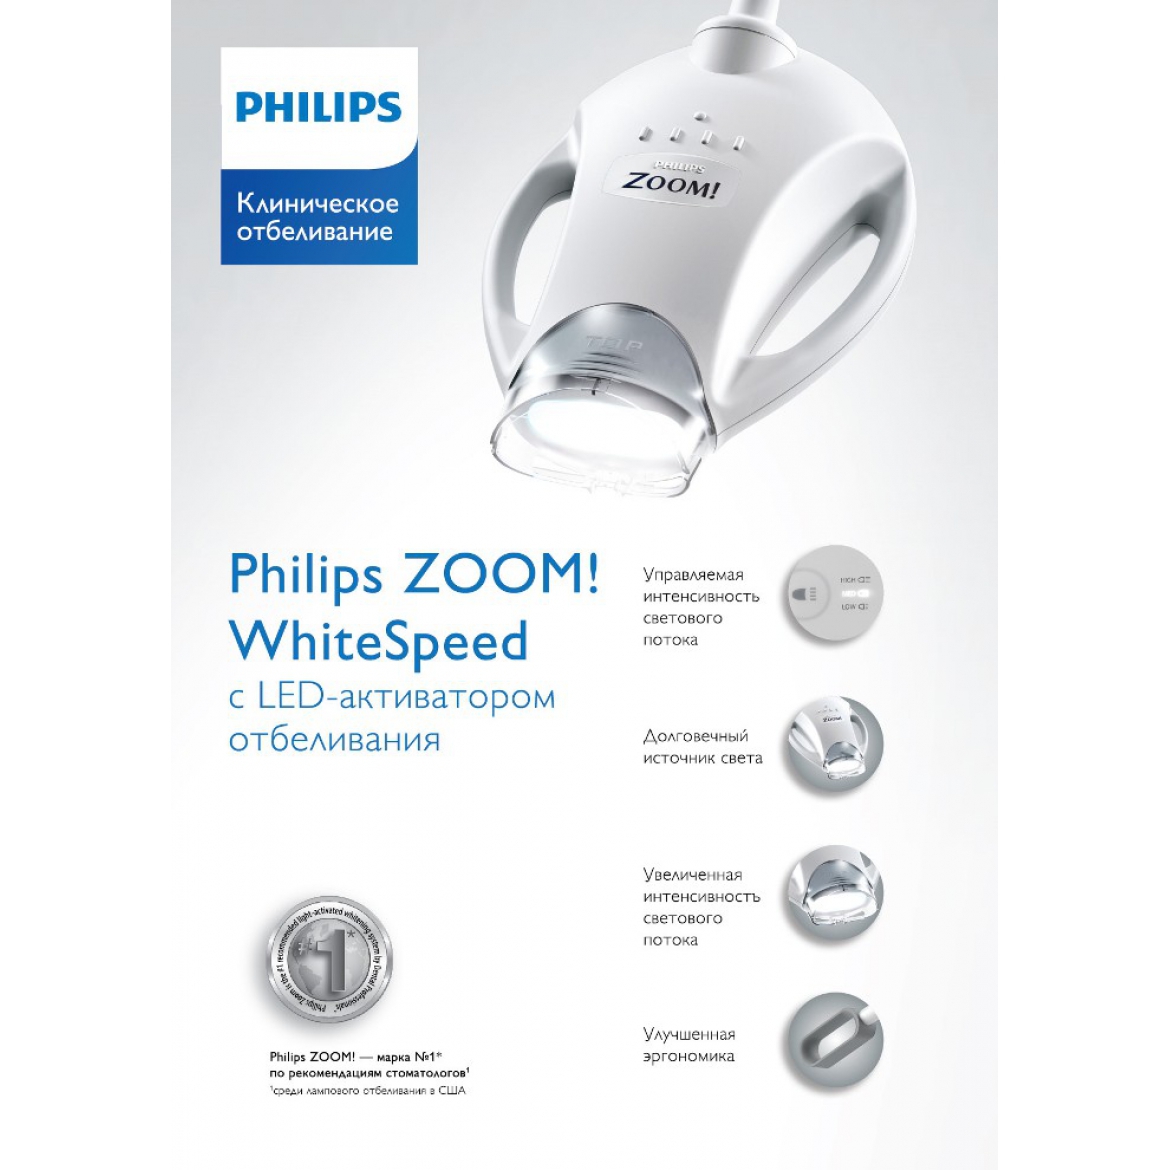 Philips Zoom 4 WhiteSpeed - отбеливающая лампа 4-го поколения  с LED-активатором отбеливания